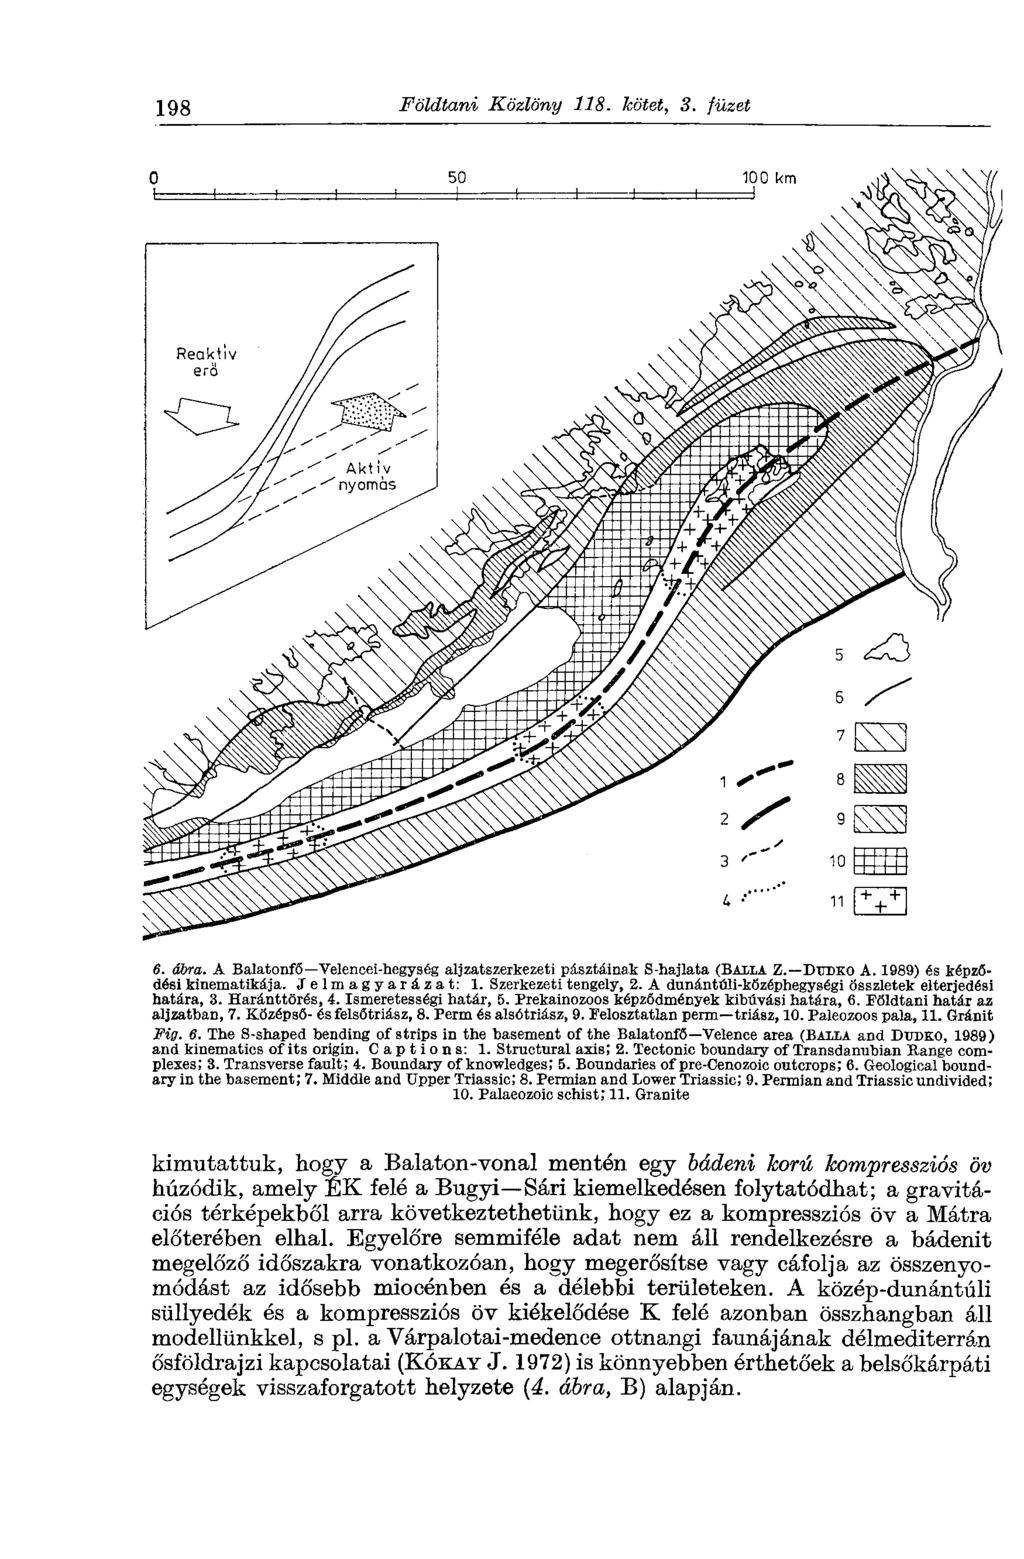 198 Földtani Közlöny 118. kötet, 3. füzet 6. ábra. A Balatonfő Velencei-hegység aljzatszerkezeti pasztáinak S-hajlata (BALLÁ Z. Битжо A. 1989) és képződési kinematikája. Jelmagyarázat: 1.